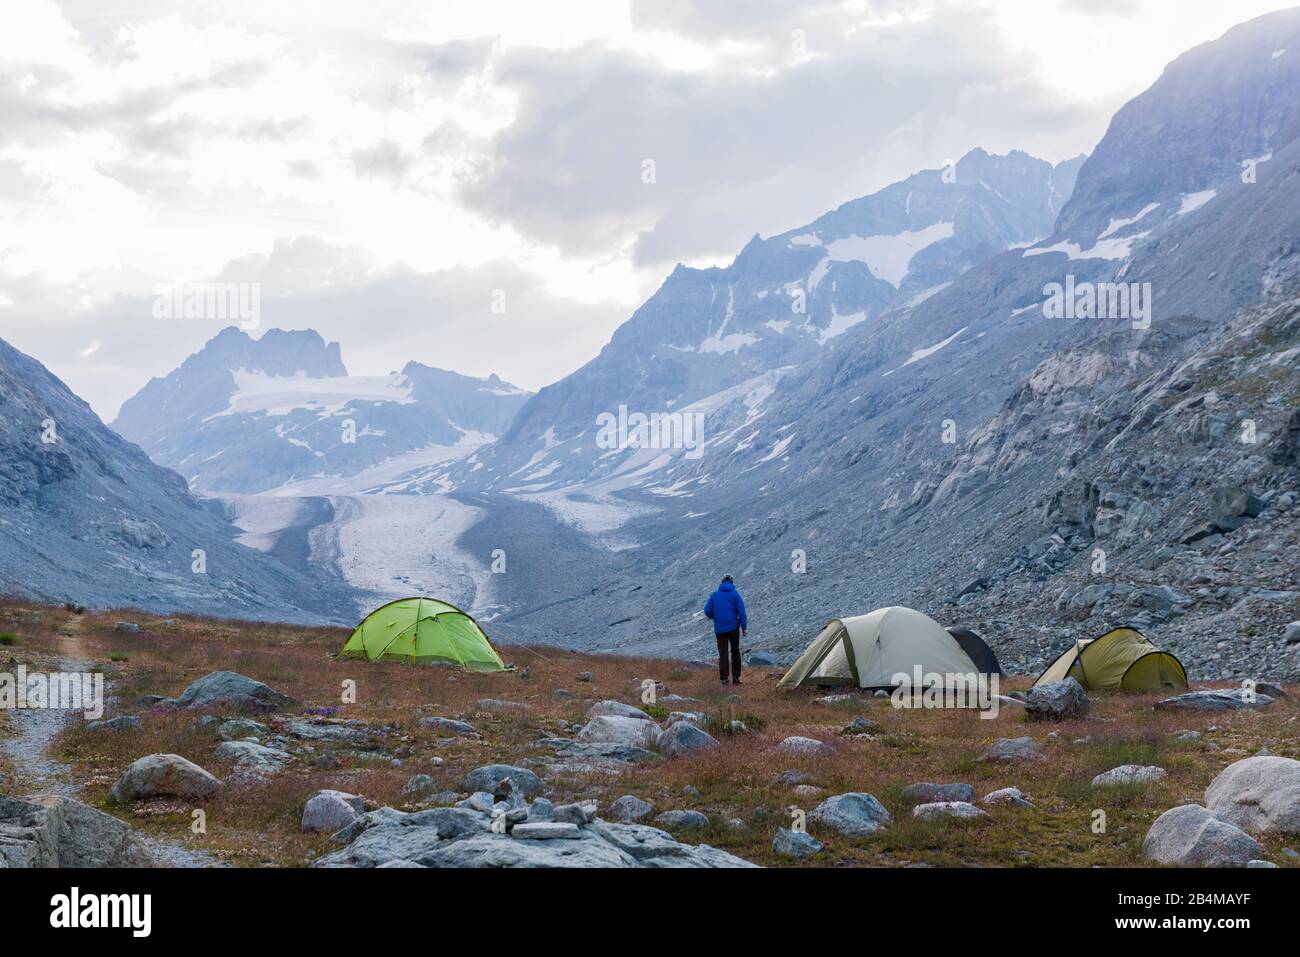 Schweiz, Wallis, Haute Route Chamonix Zermatt, Mann und vier Zelte als Biwak beim Glacier d'Otemma in der Morgendämmerung Stock Photo